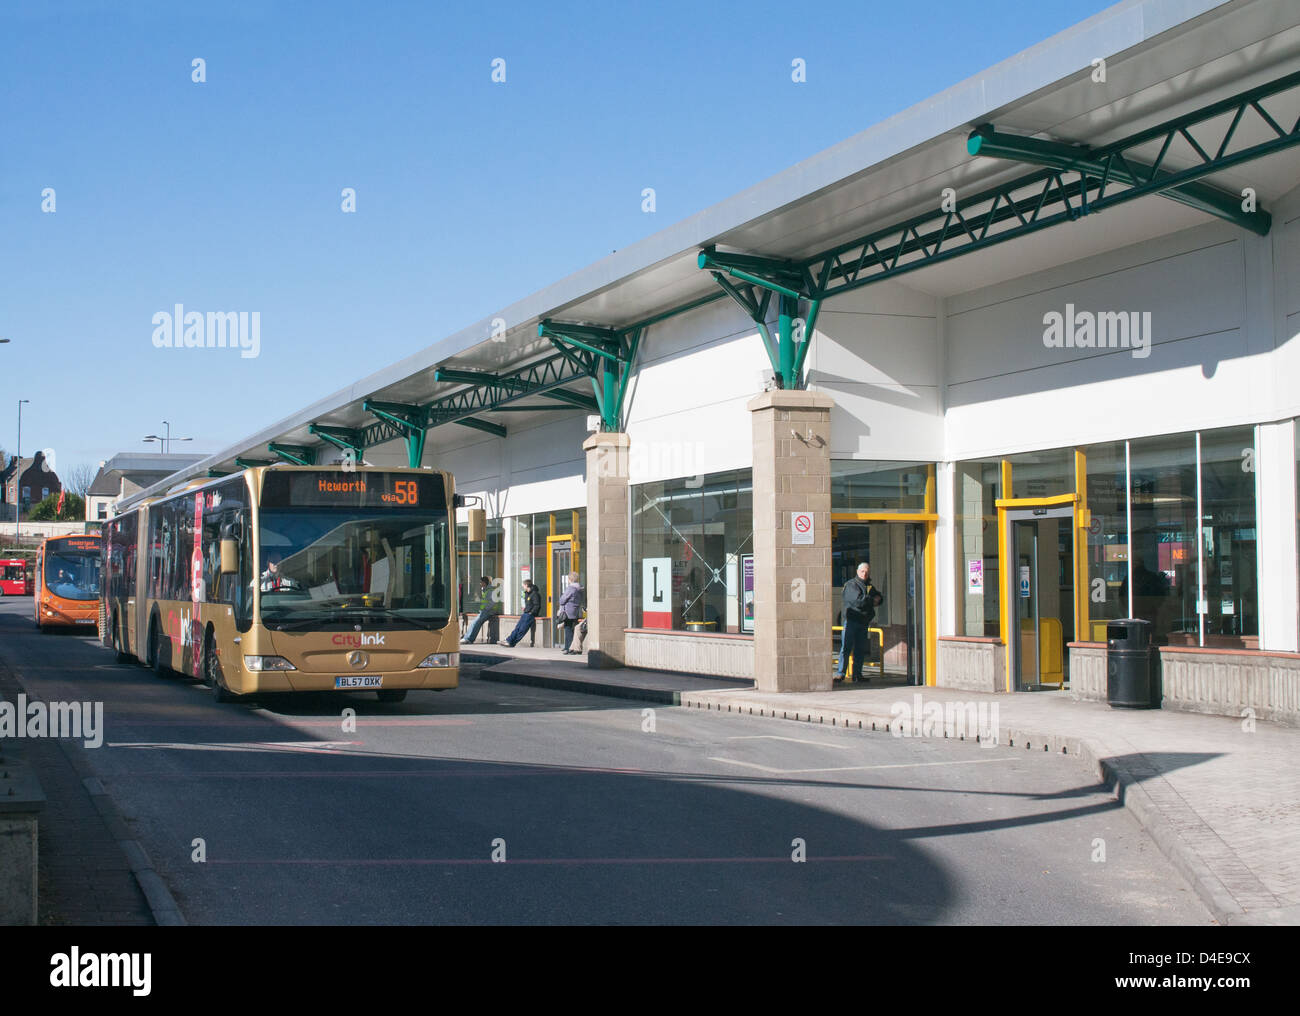 La station de bus et de métro Gateshead informatisées North East England UK Banque D'Images